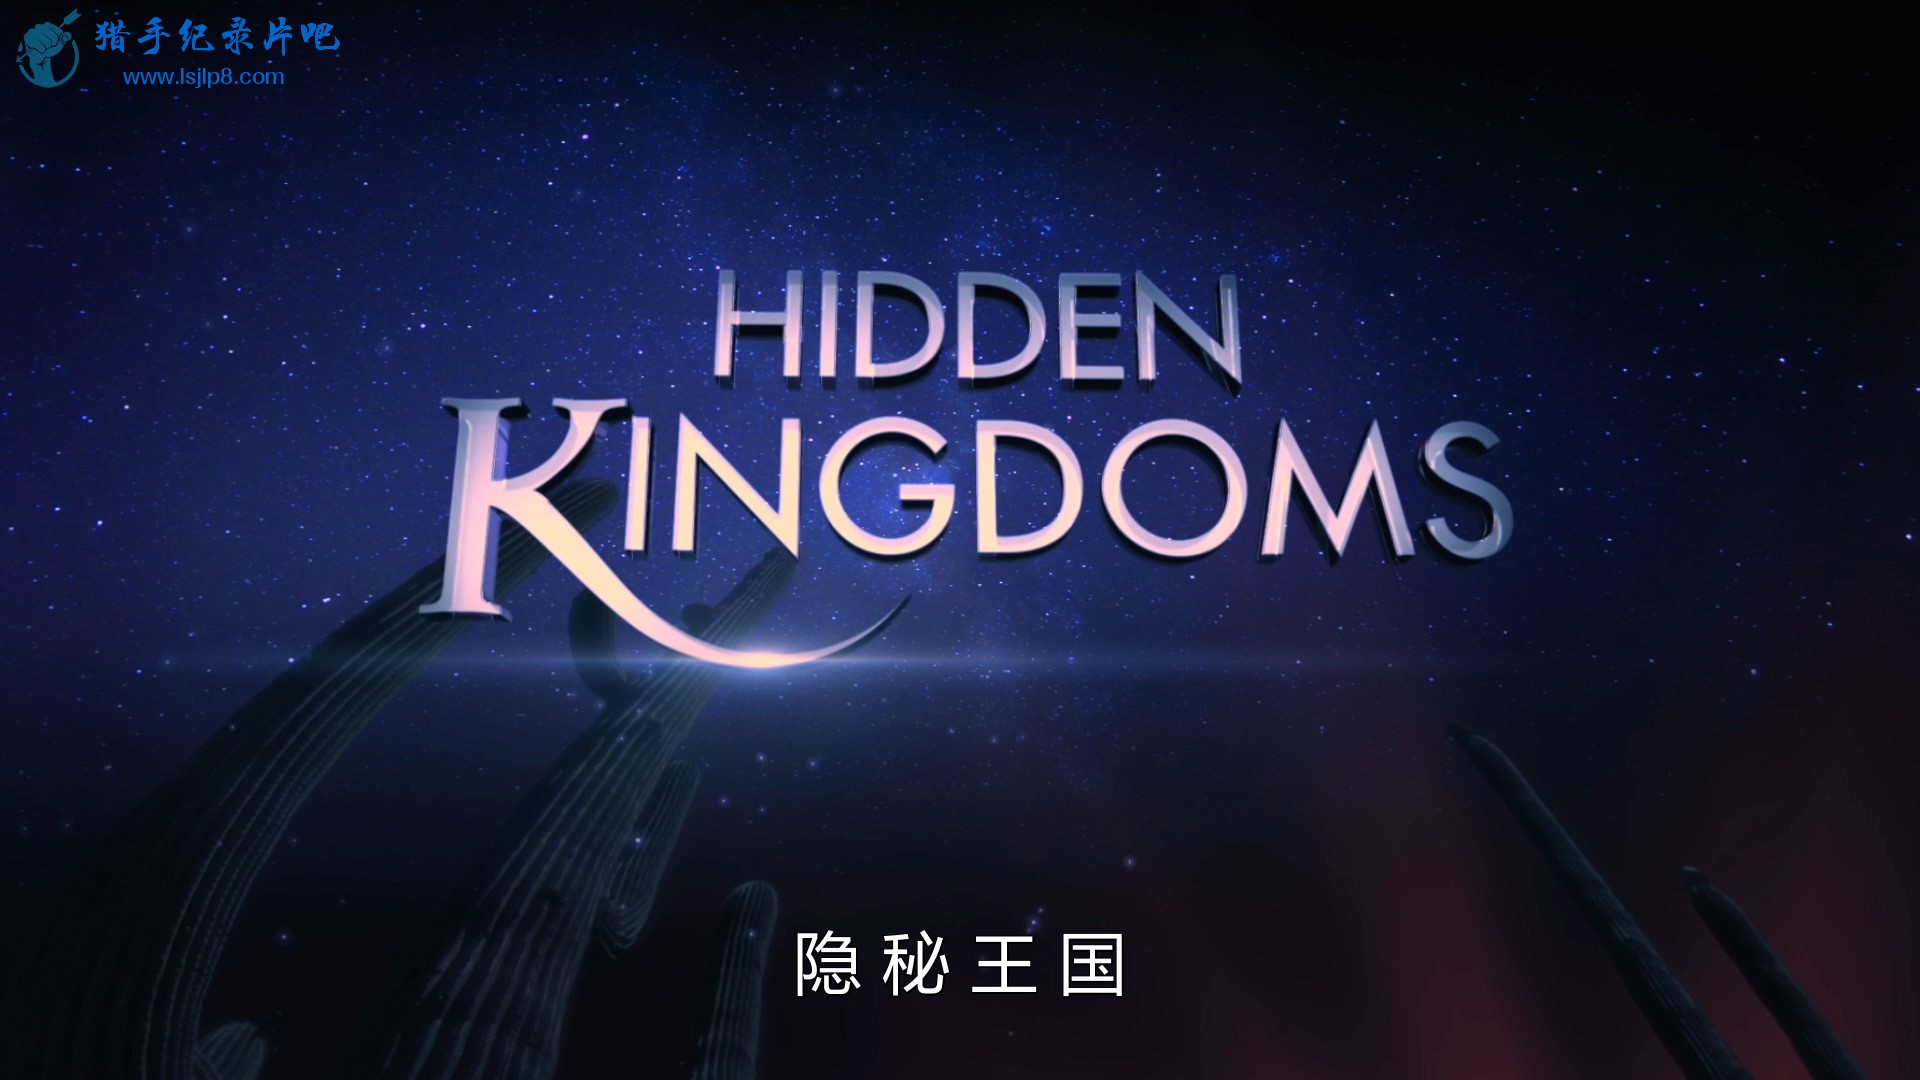 BBC.Hidden.Kingdoms.EP01.2014.1080p.BluRay.x264.DTS-WiKi.mkv_20200212_114812.848.jpg